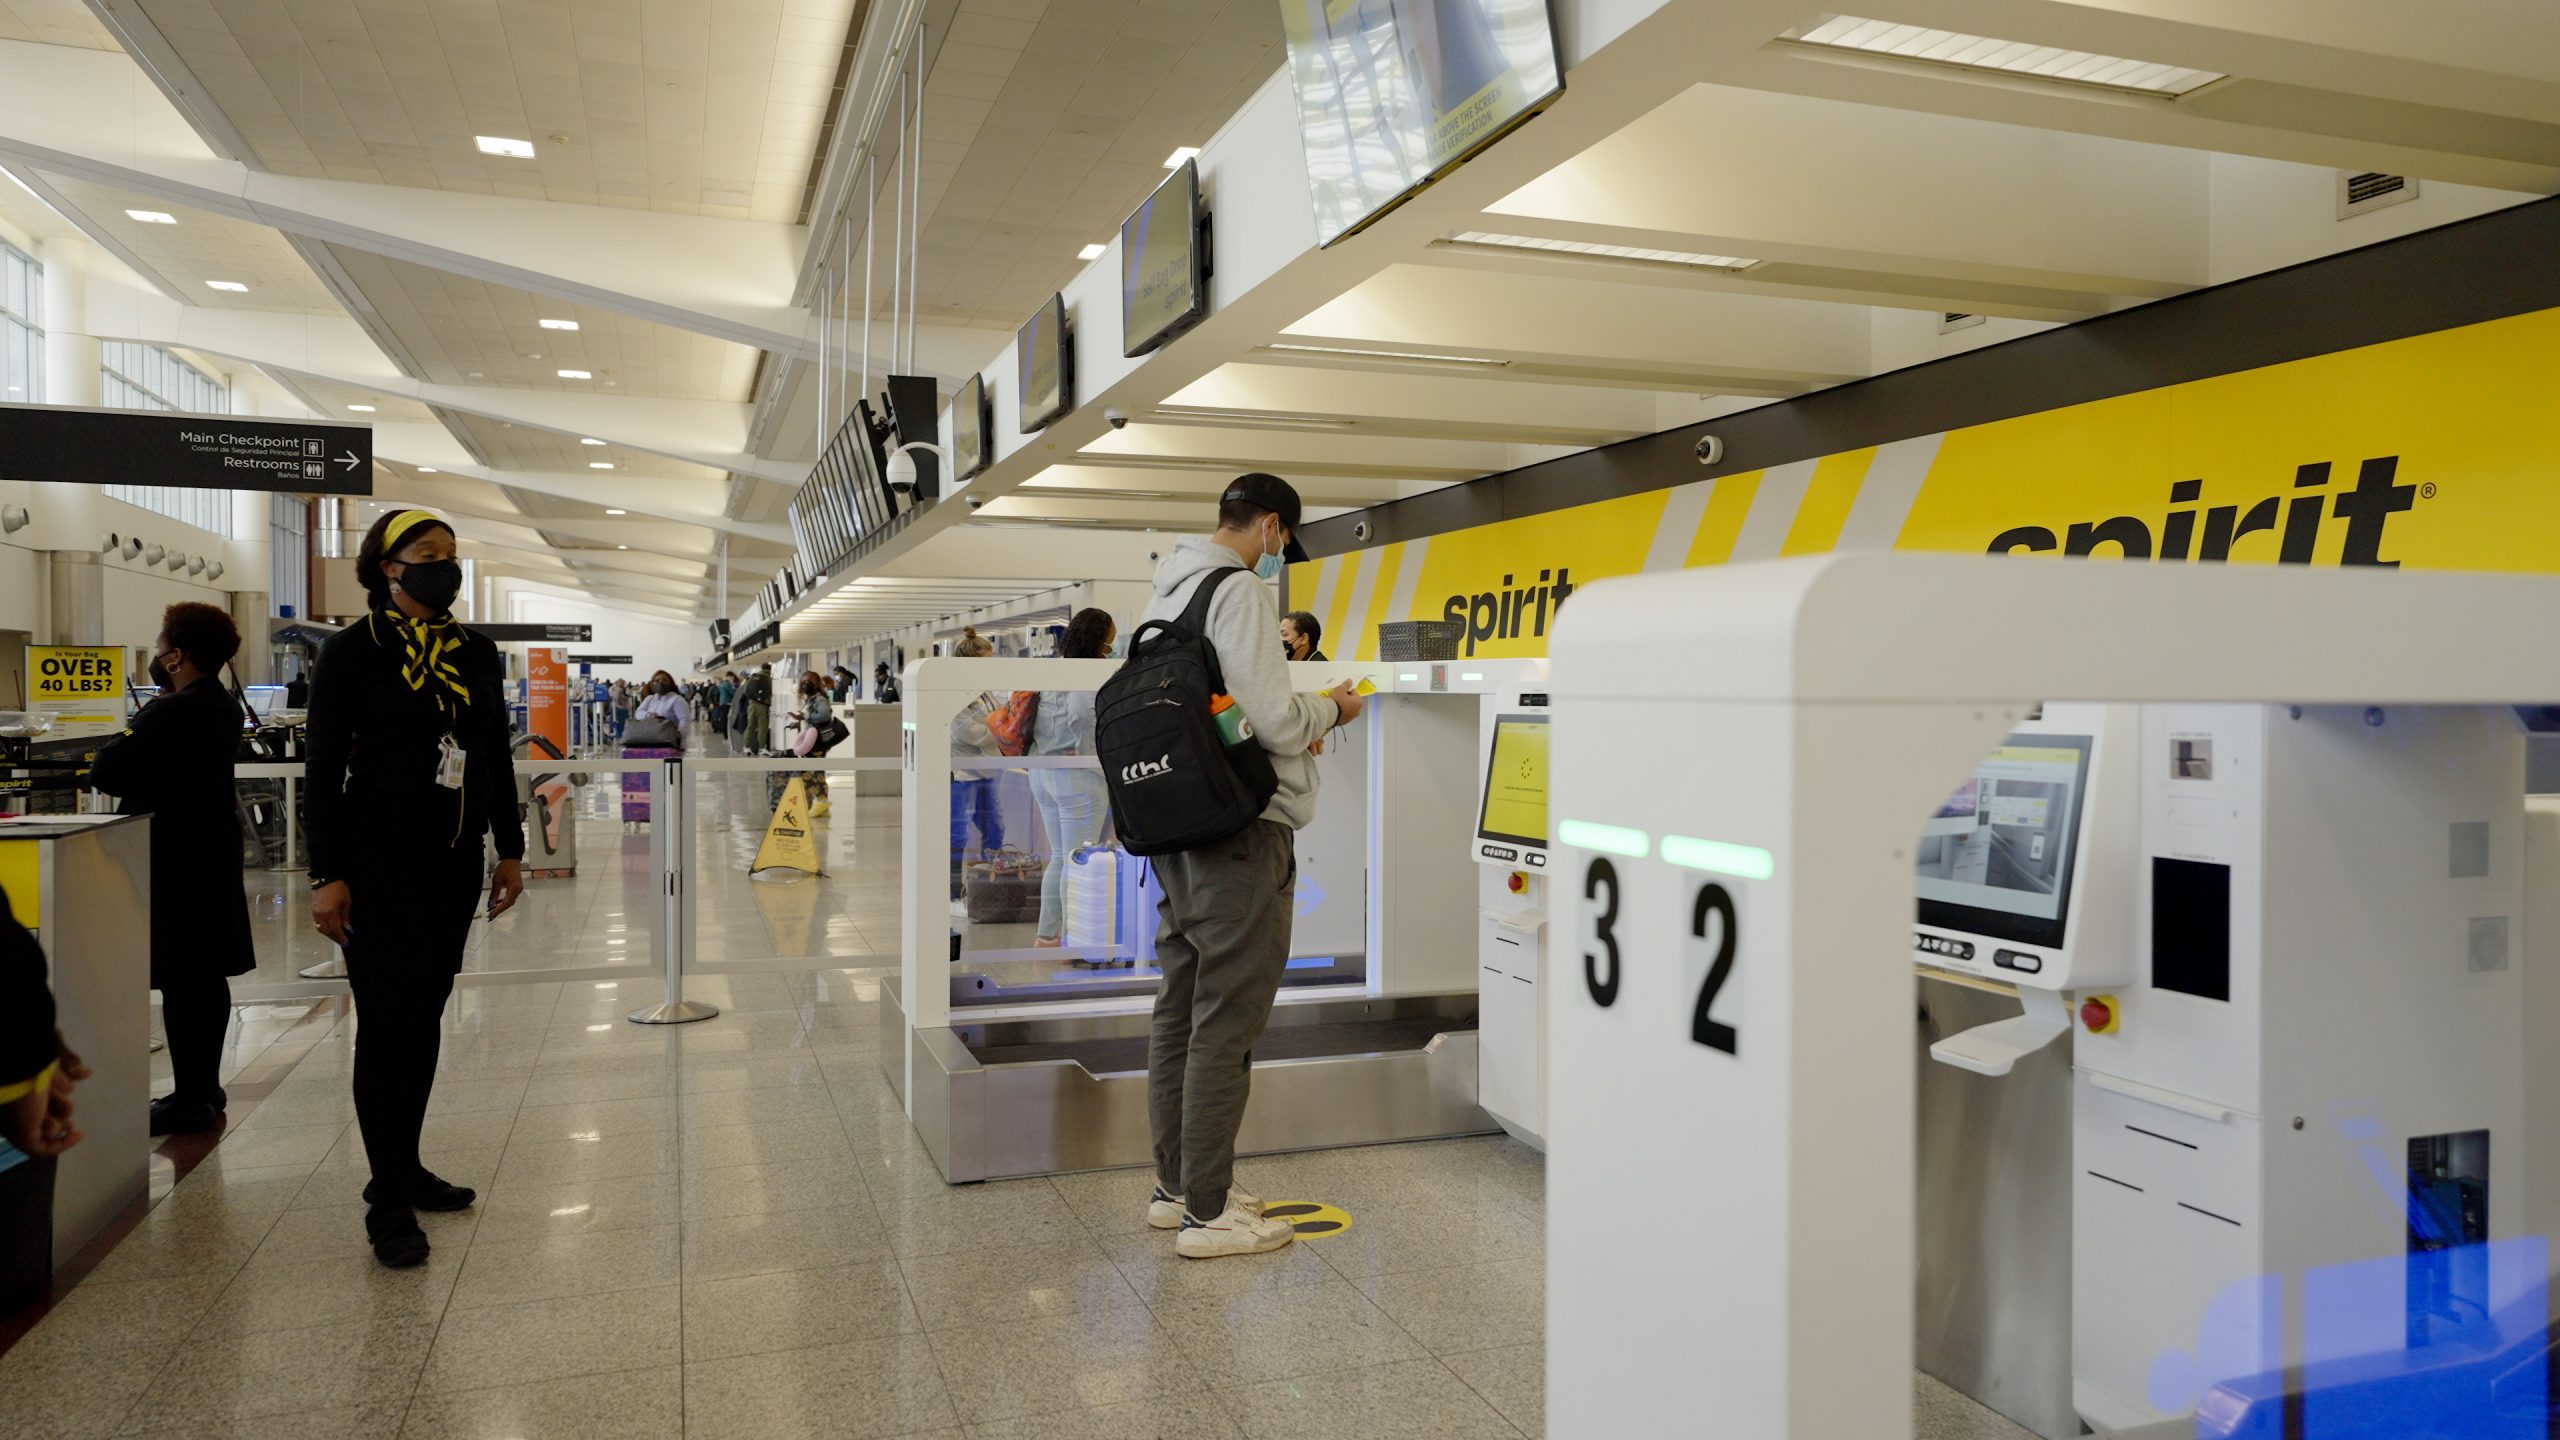 ATL Spirit Airlines' selfbag drop and passenger biometrics